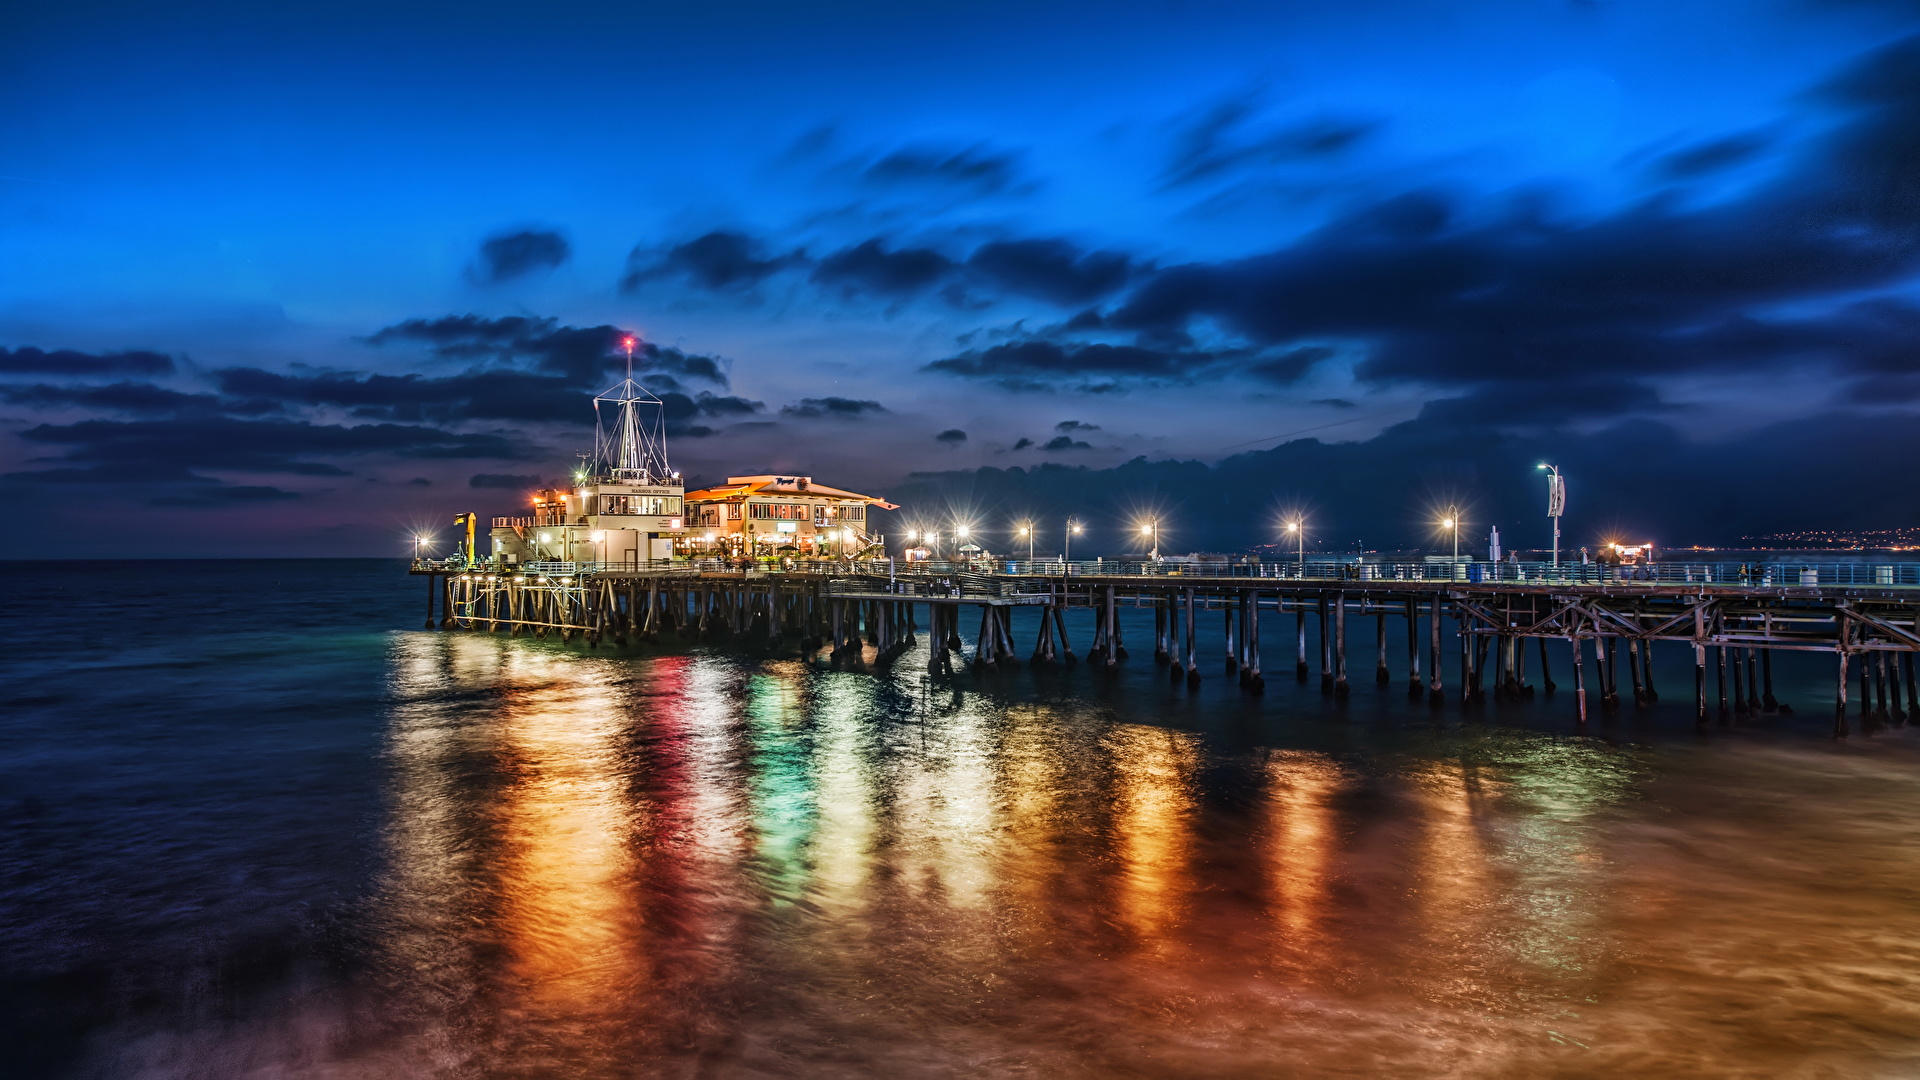 壁紙 19x1080 海 アメリカ合衆国 海岸 空 Santa Monica 夜 雲 ハイダイナミックレンジ合成 自然 ダウンロード 写真